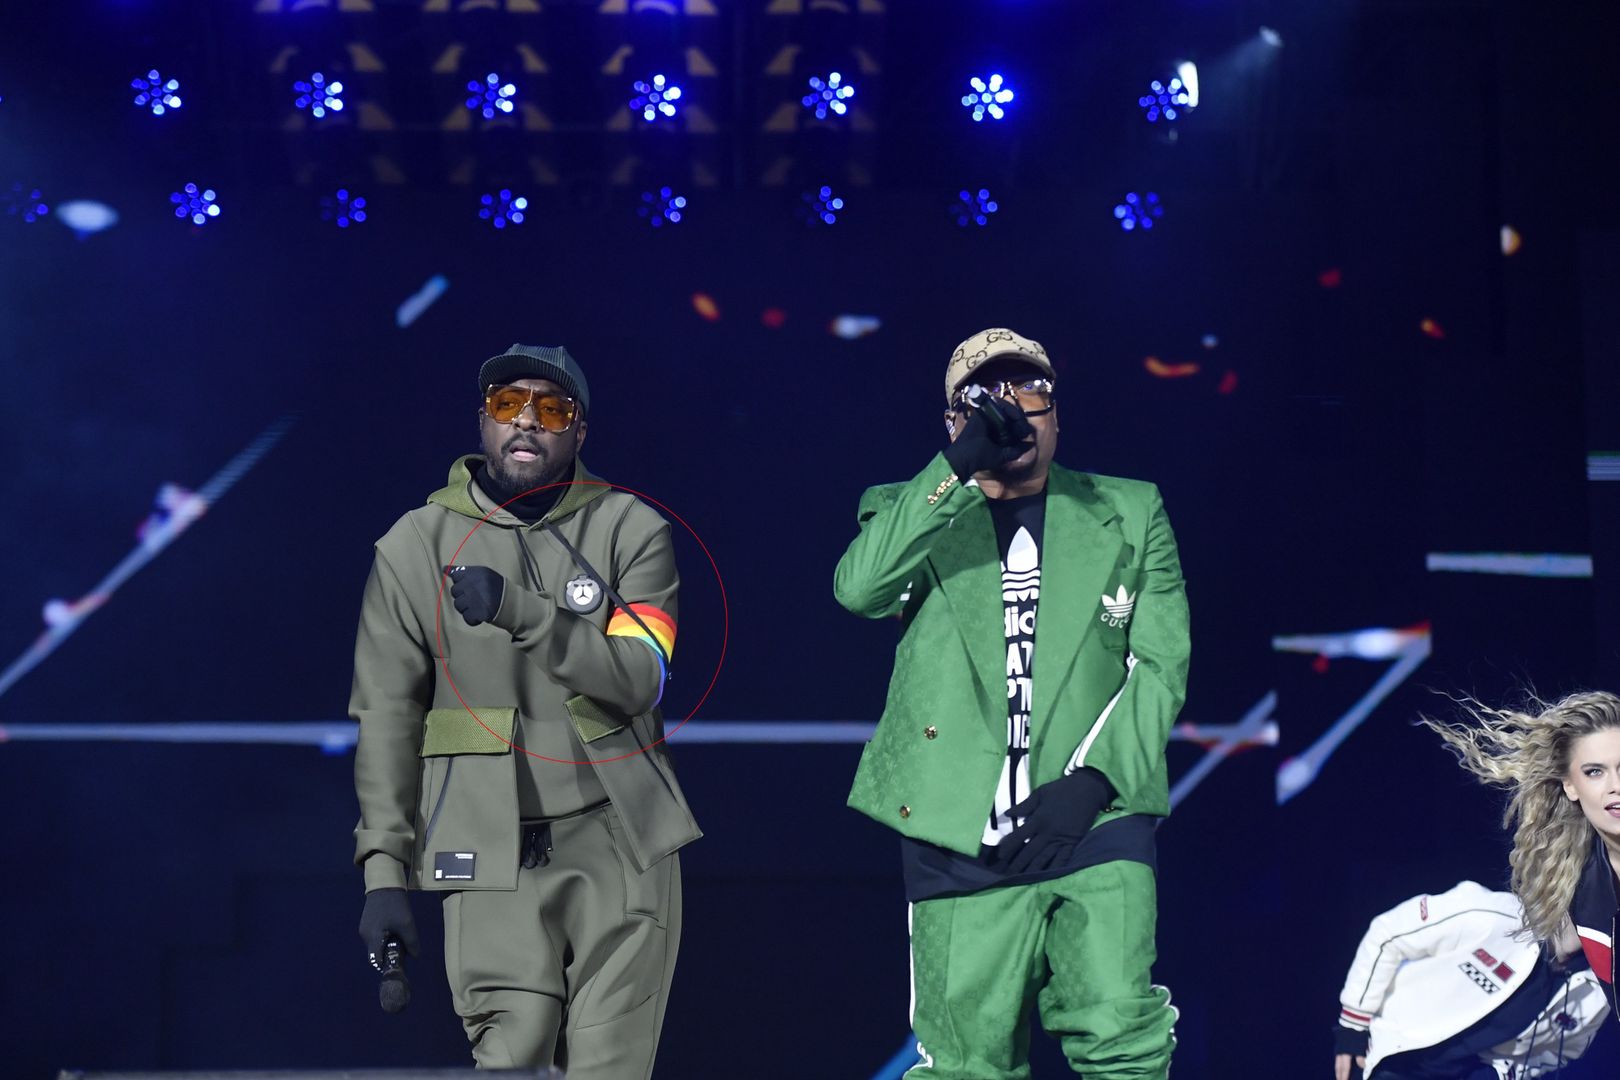 Co tam się dzieje!? Spójrzcie, jak Black Eyed Peas wystąpili w TVP